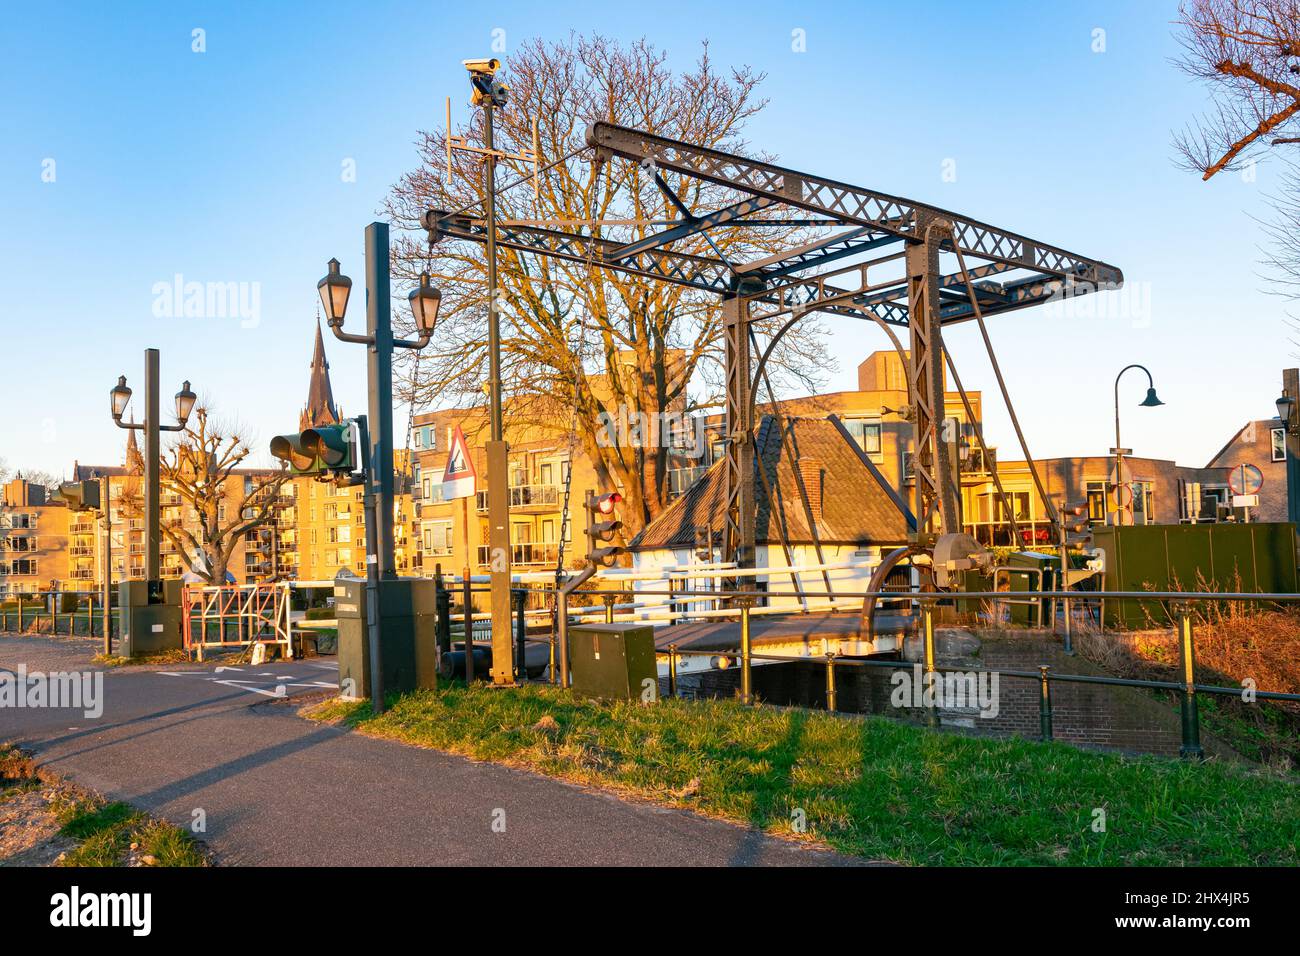 Vista panorámica de la casa del guardameta y puente levadizo llamado 'Wijcurbrug' en la ciudad de Voorburg, cerca de La Haya, Países Bajos Foto de stock